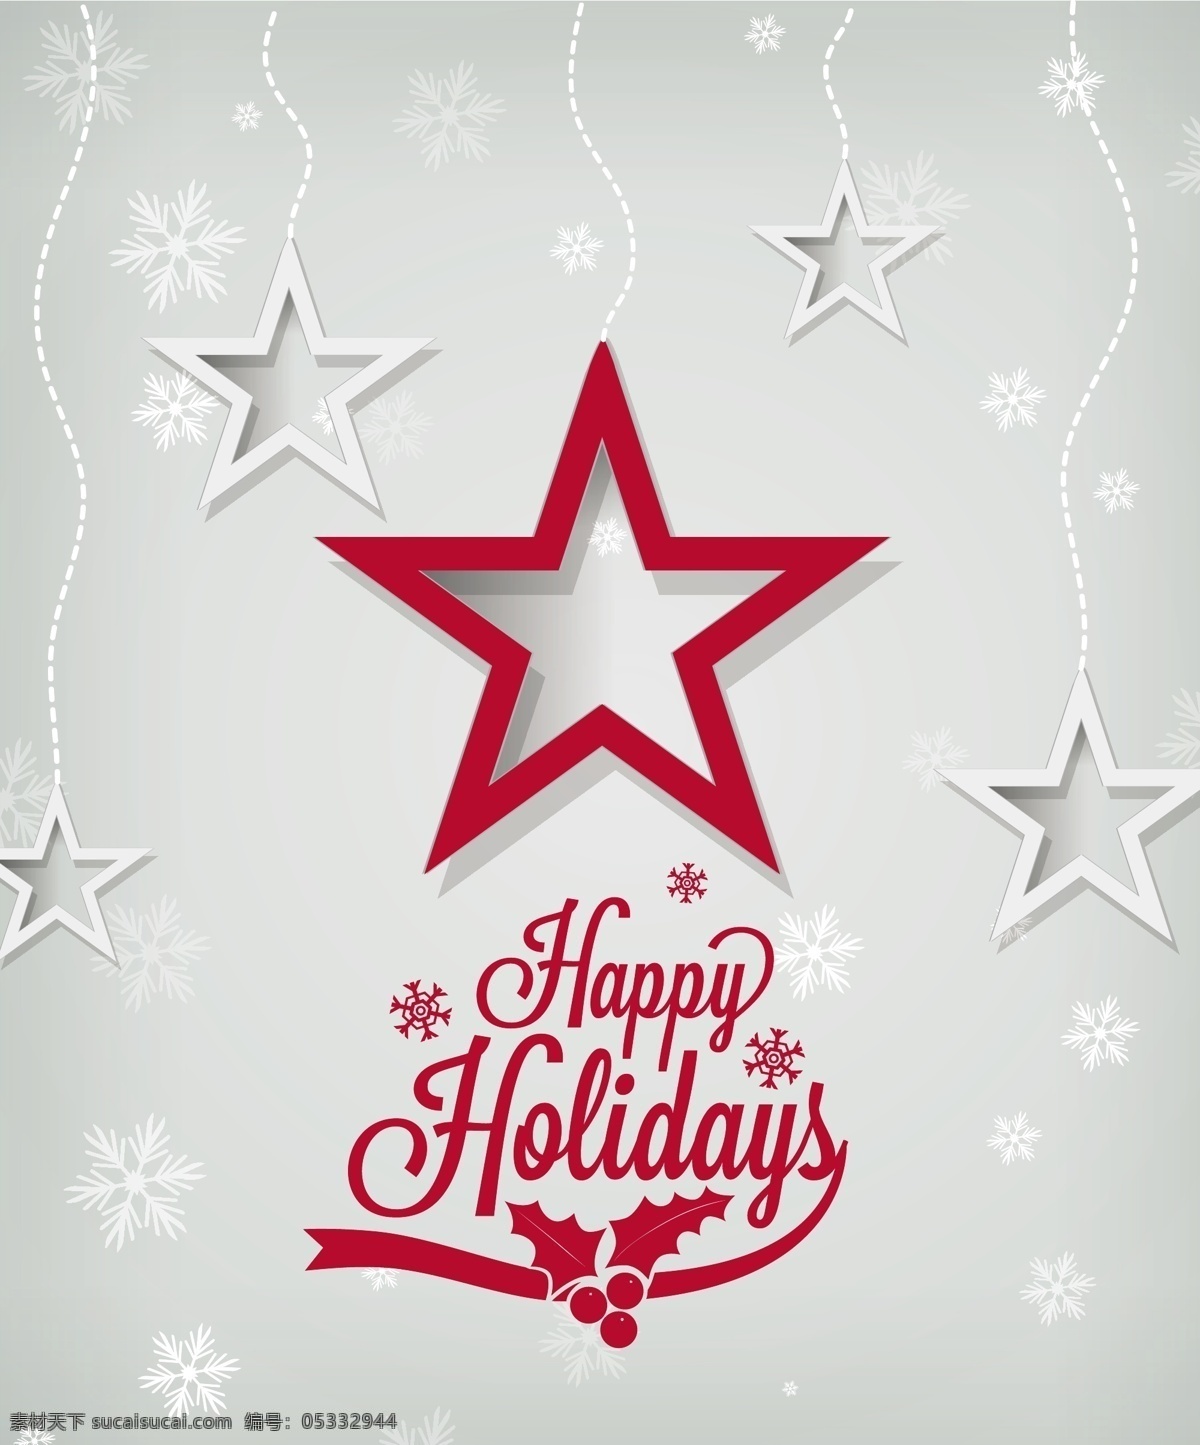 红色 五角星 经典 圣诞节 贺卡 矢量 矢量素材 设计素材 背景素材 圣诞